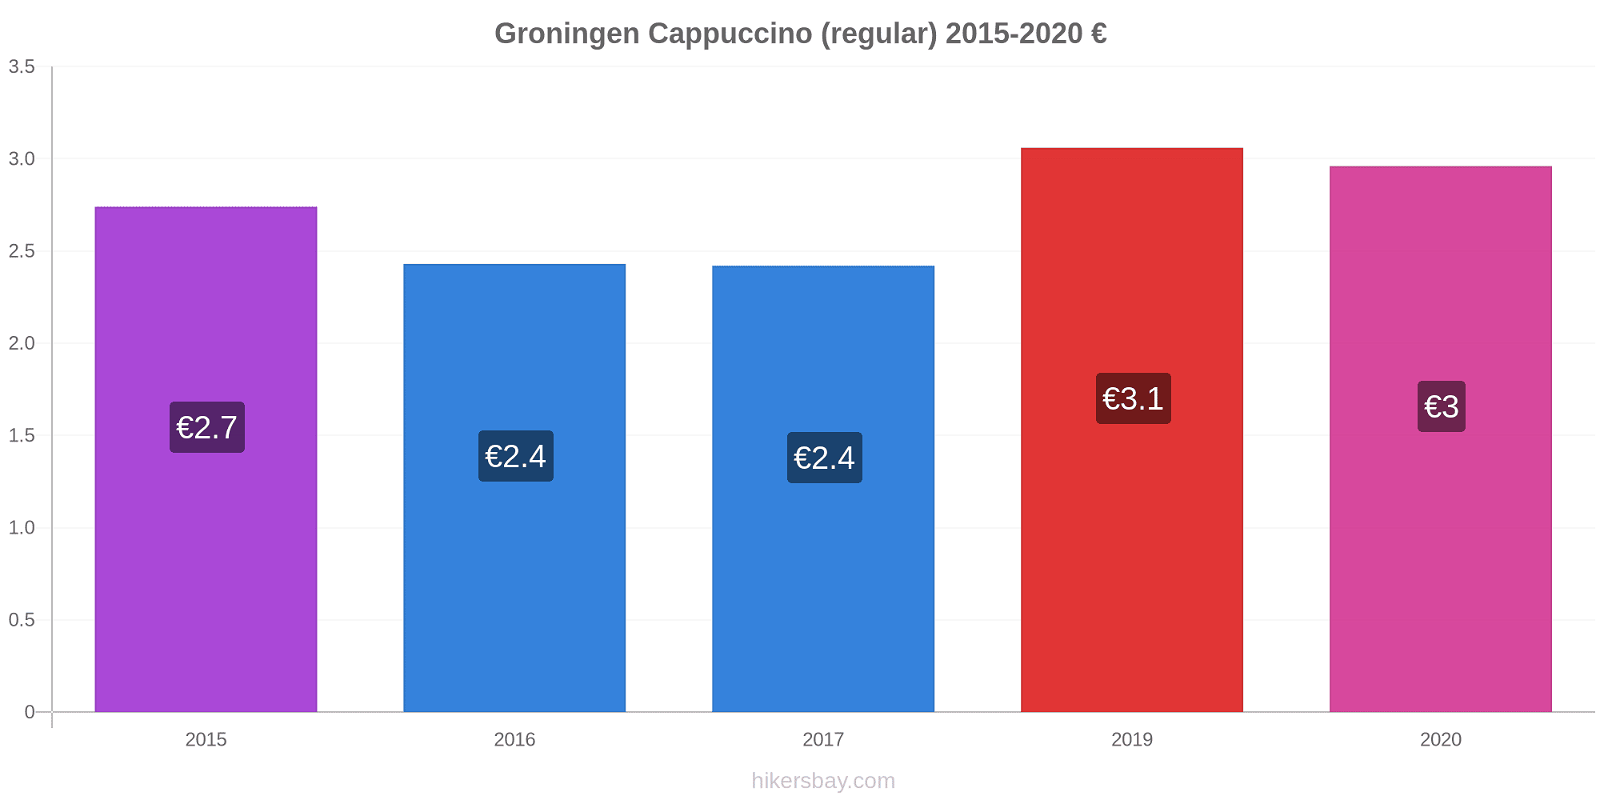 Groningen price changes Cappuccino (regular) hikersbay.com